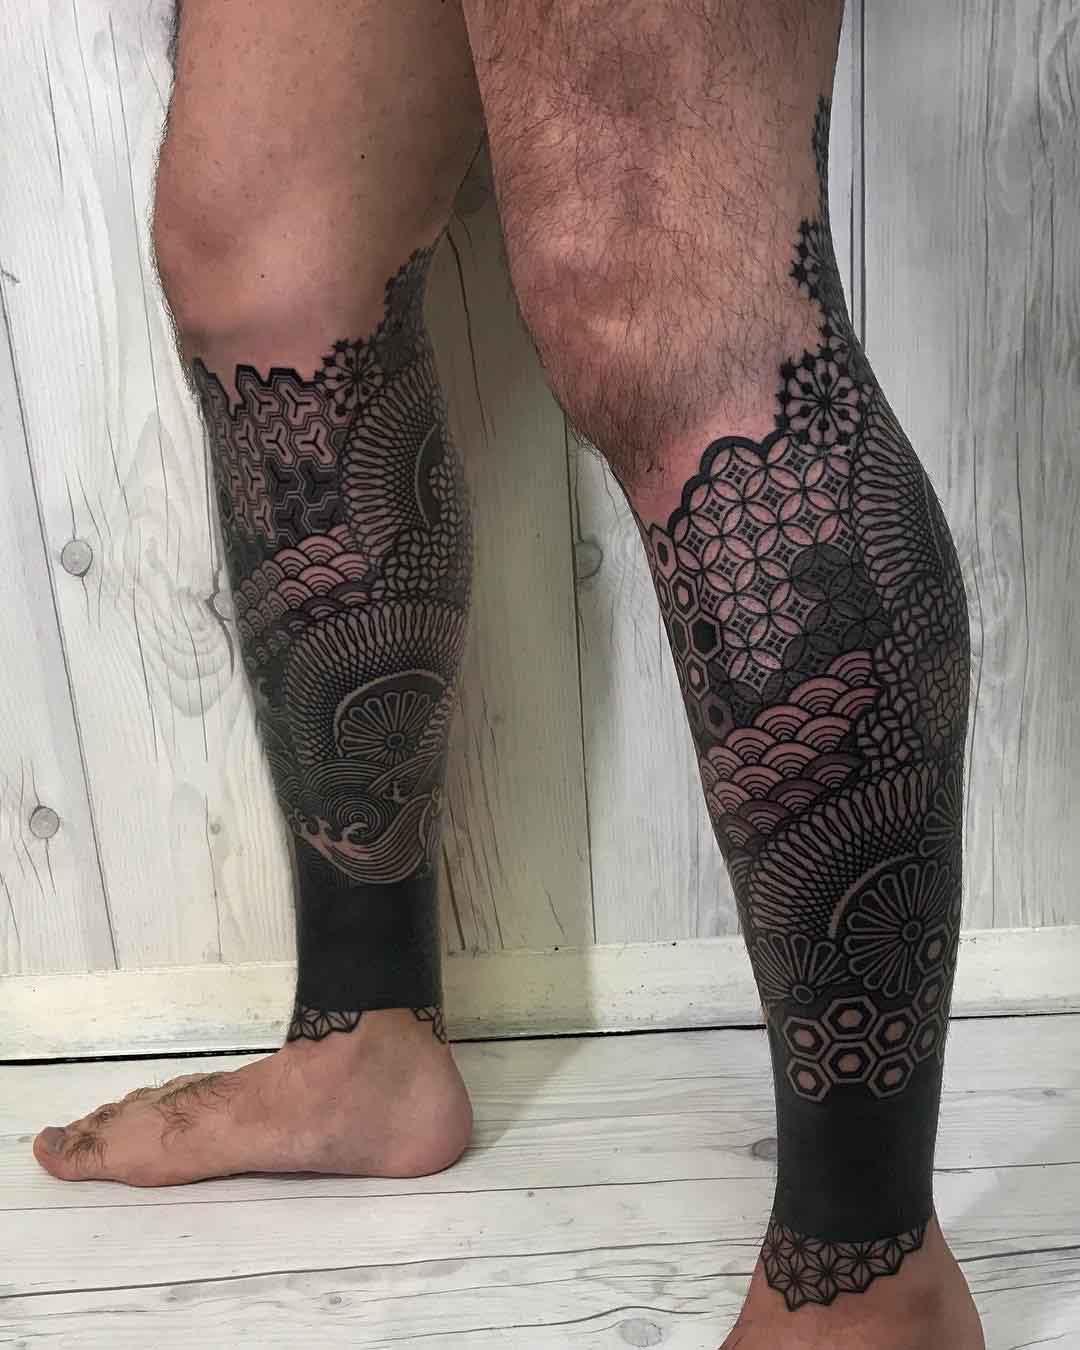 calf sleeves tattoo on leg